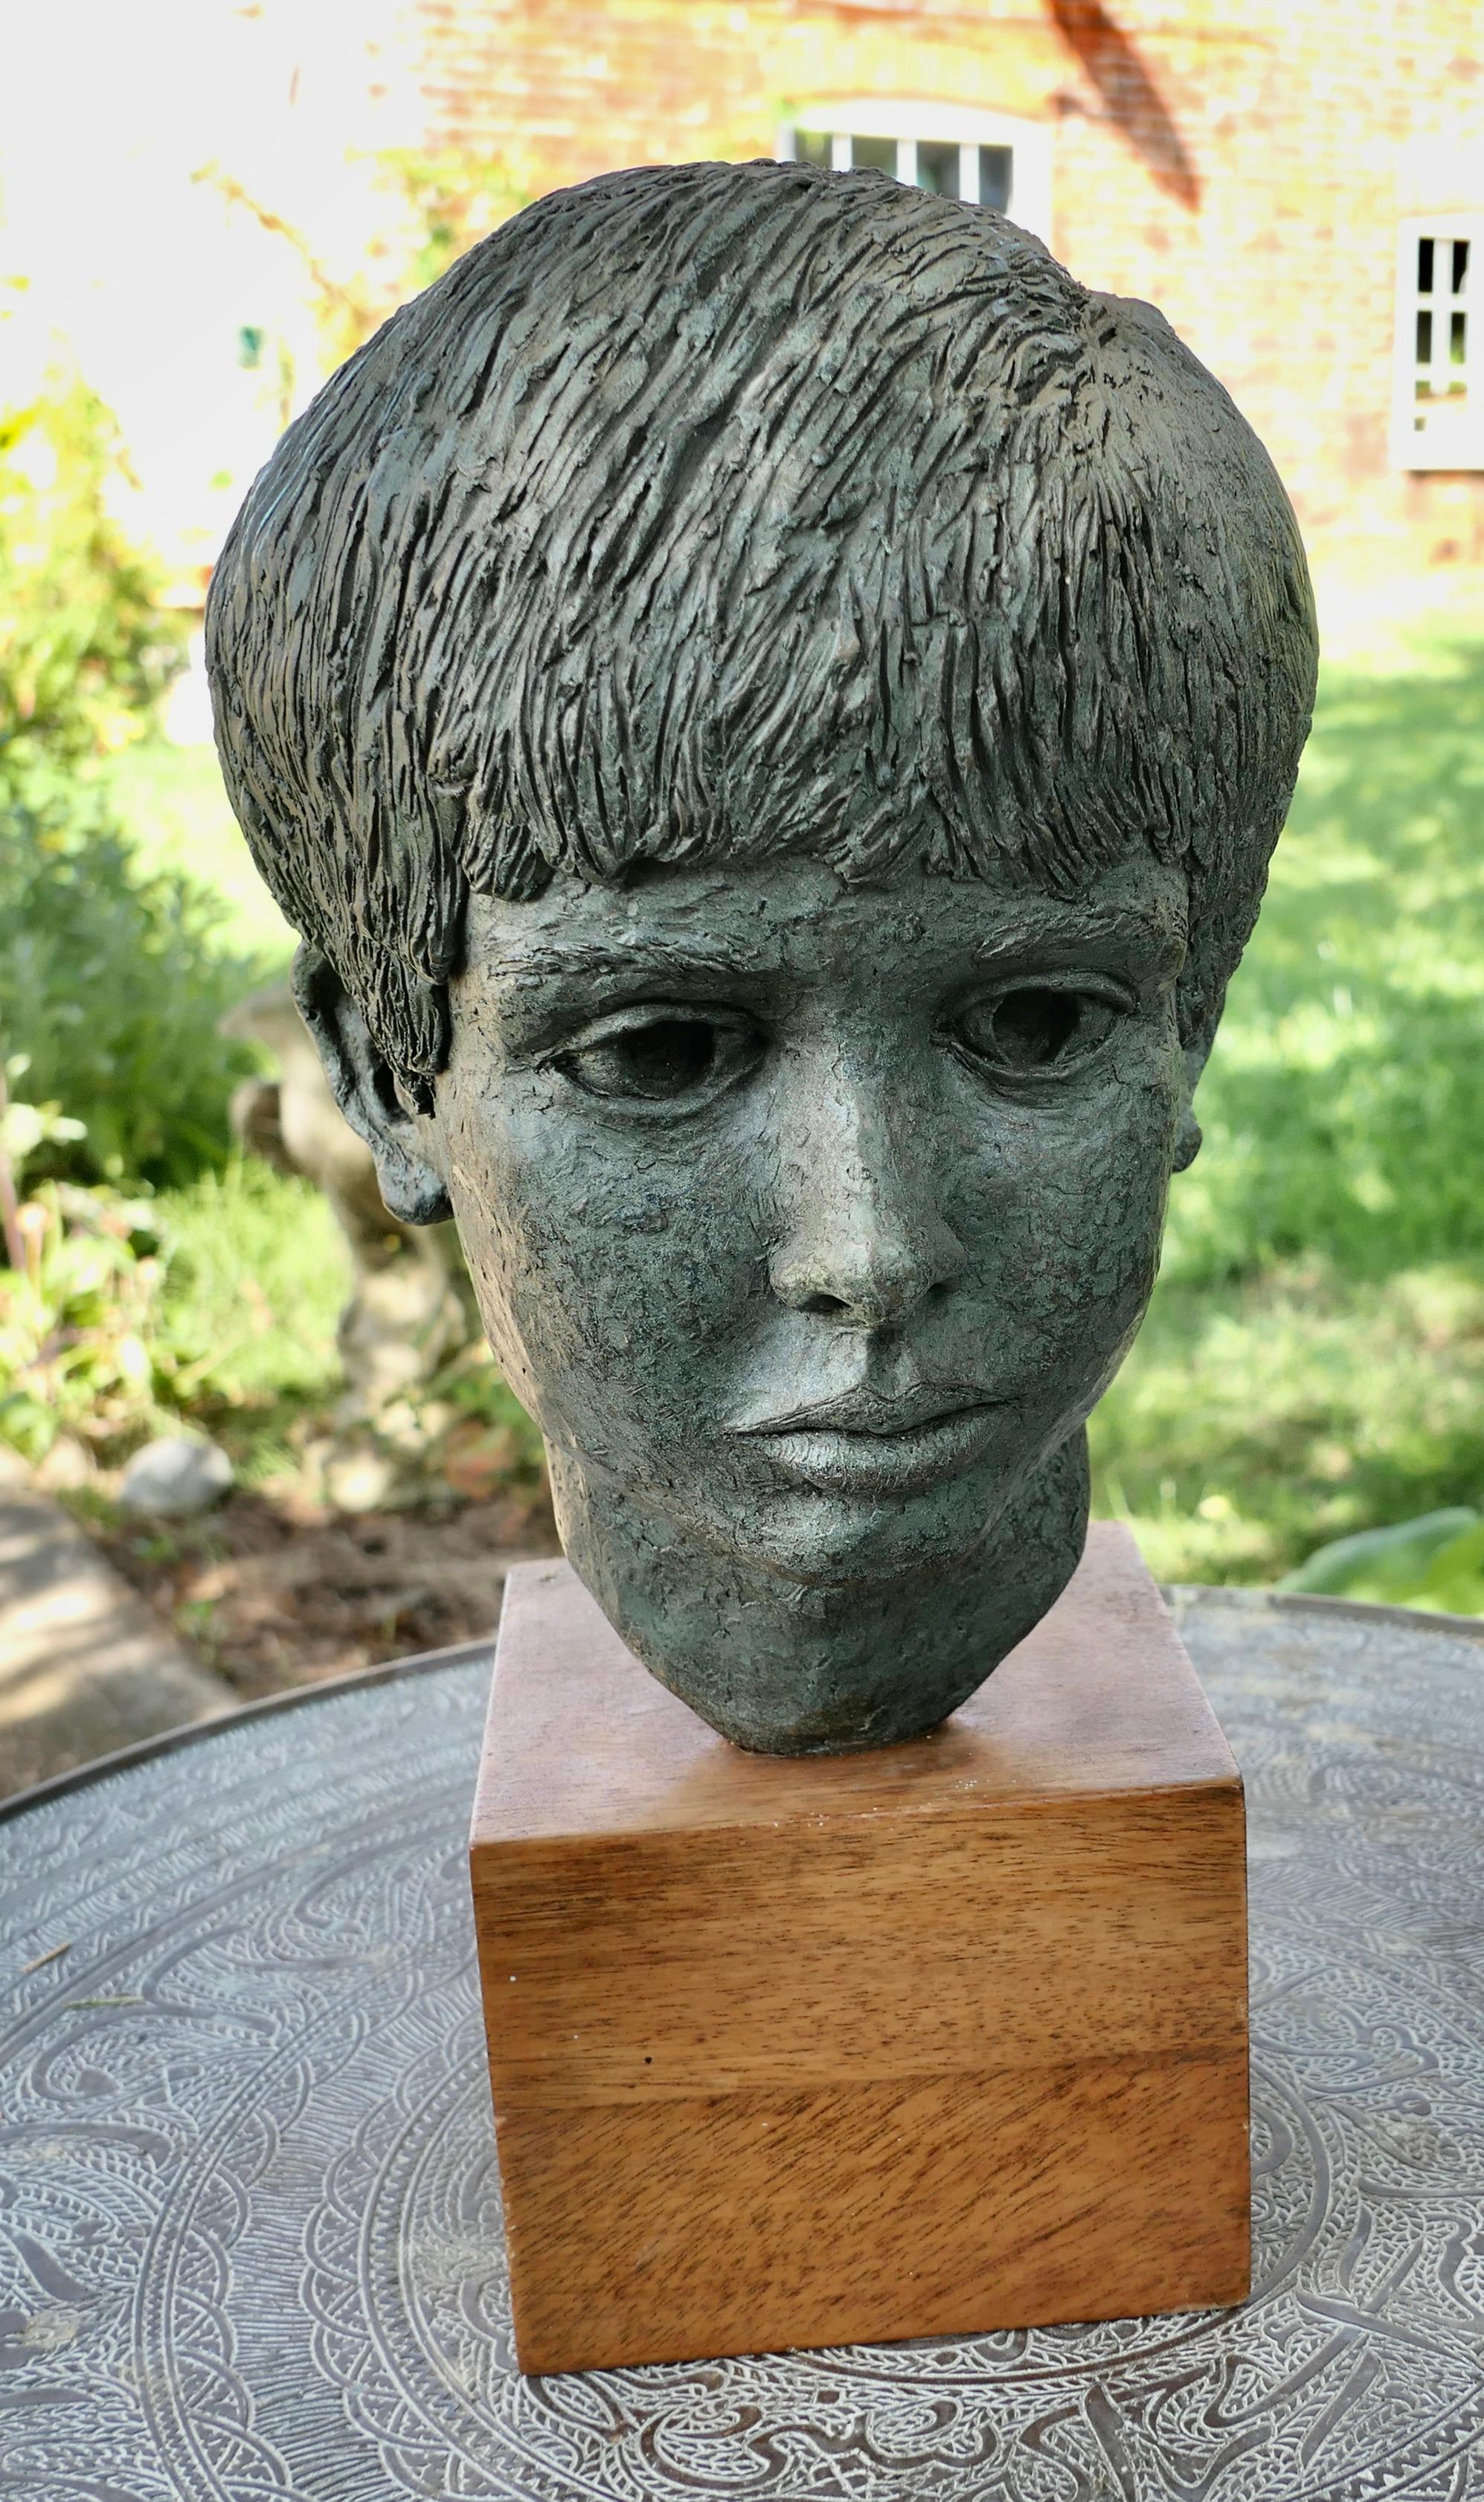 Buste d'un jeune garçon d'après un modèle d'artiste, non signé

Il s'agit d'une très belle pièce fabriquée à la main, datant du milieu du 20e siècle, qui a été découverte dans un Studio d'art lors d'une rénovation. 

Il s'agit d'une tête